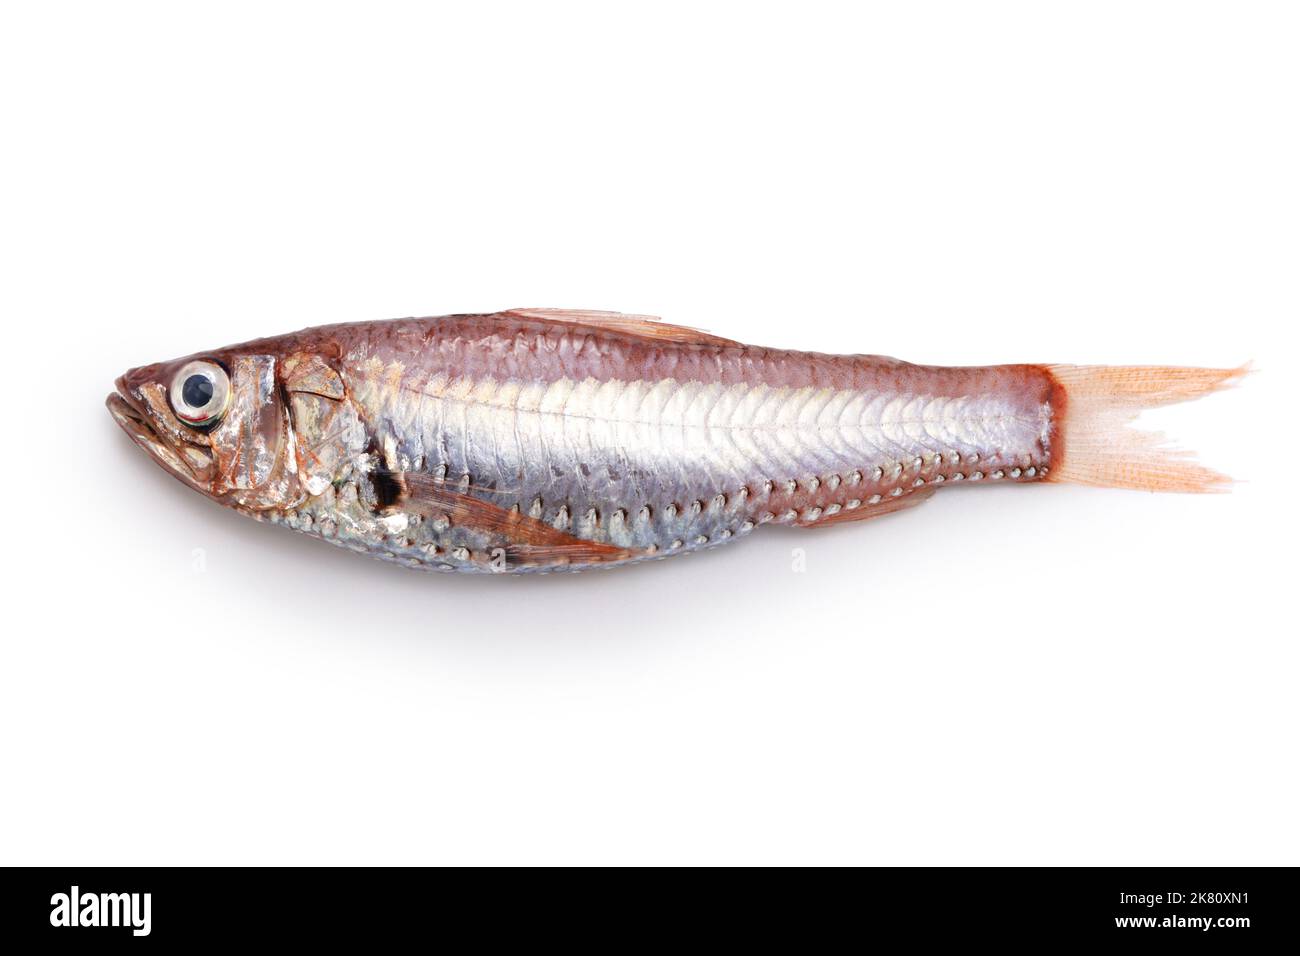 Köstliche Tiefseefische, die noch nicht berühmt sind (Neoscopelus microchir Matsubara)isoliert auf weißem Hintergrund Stockfoto